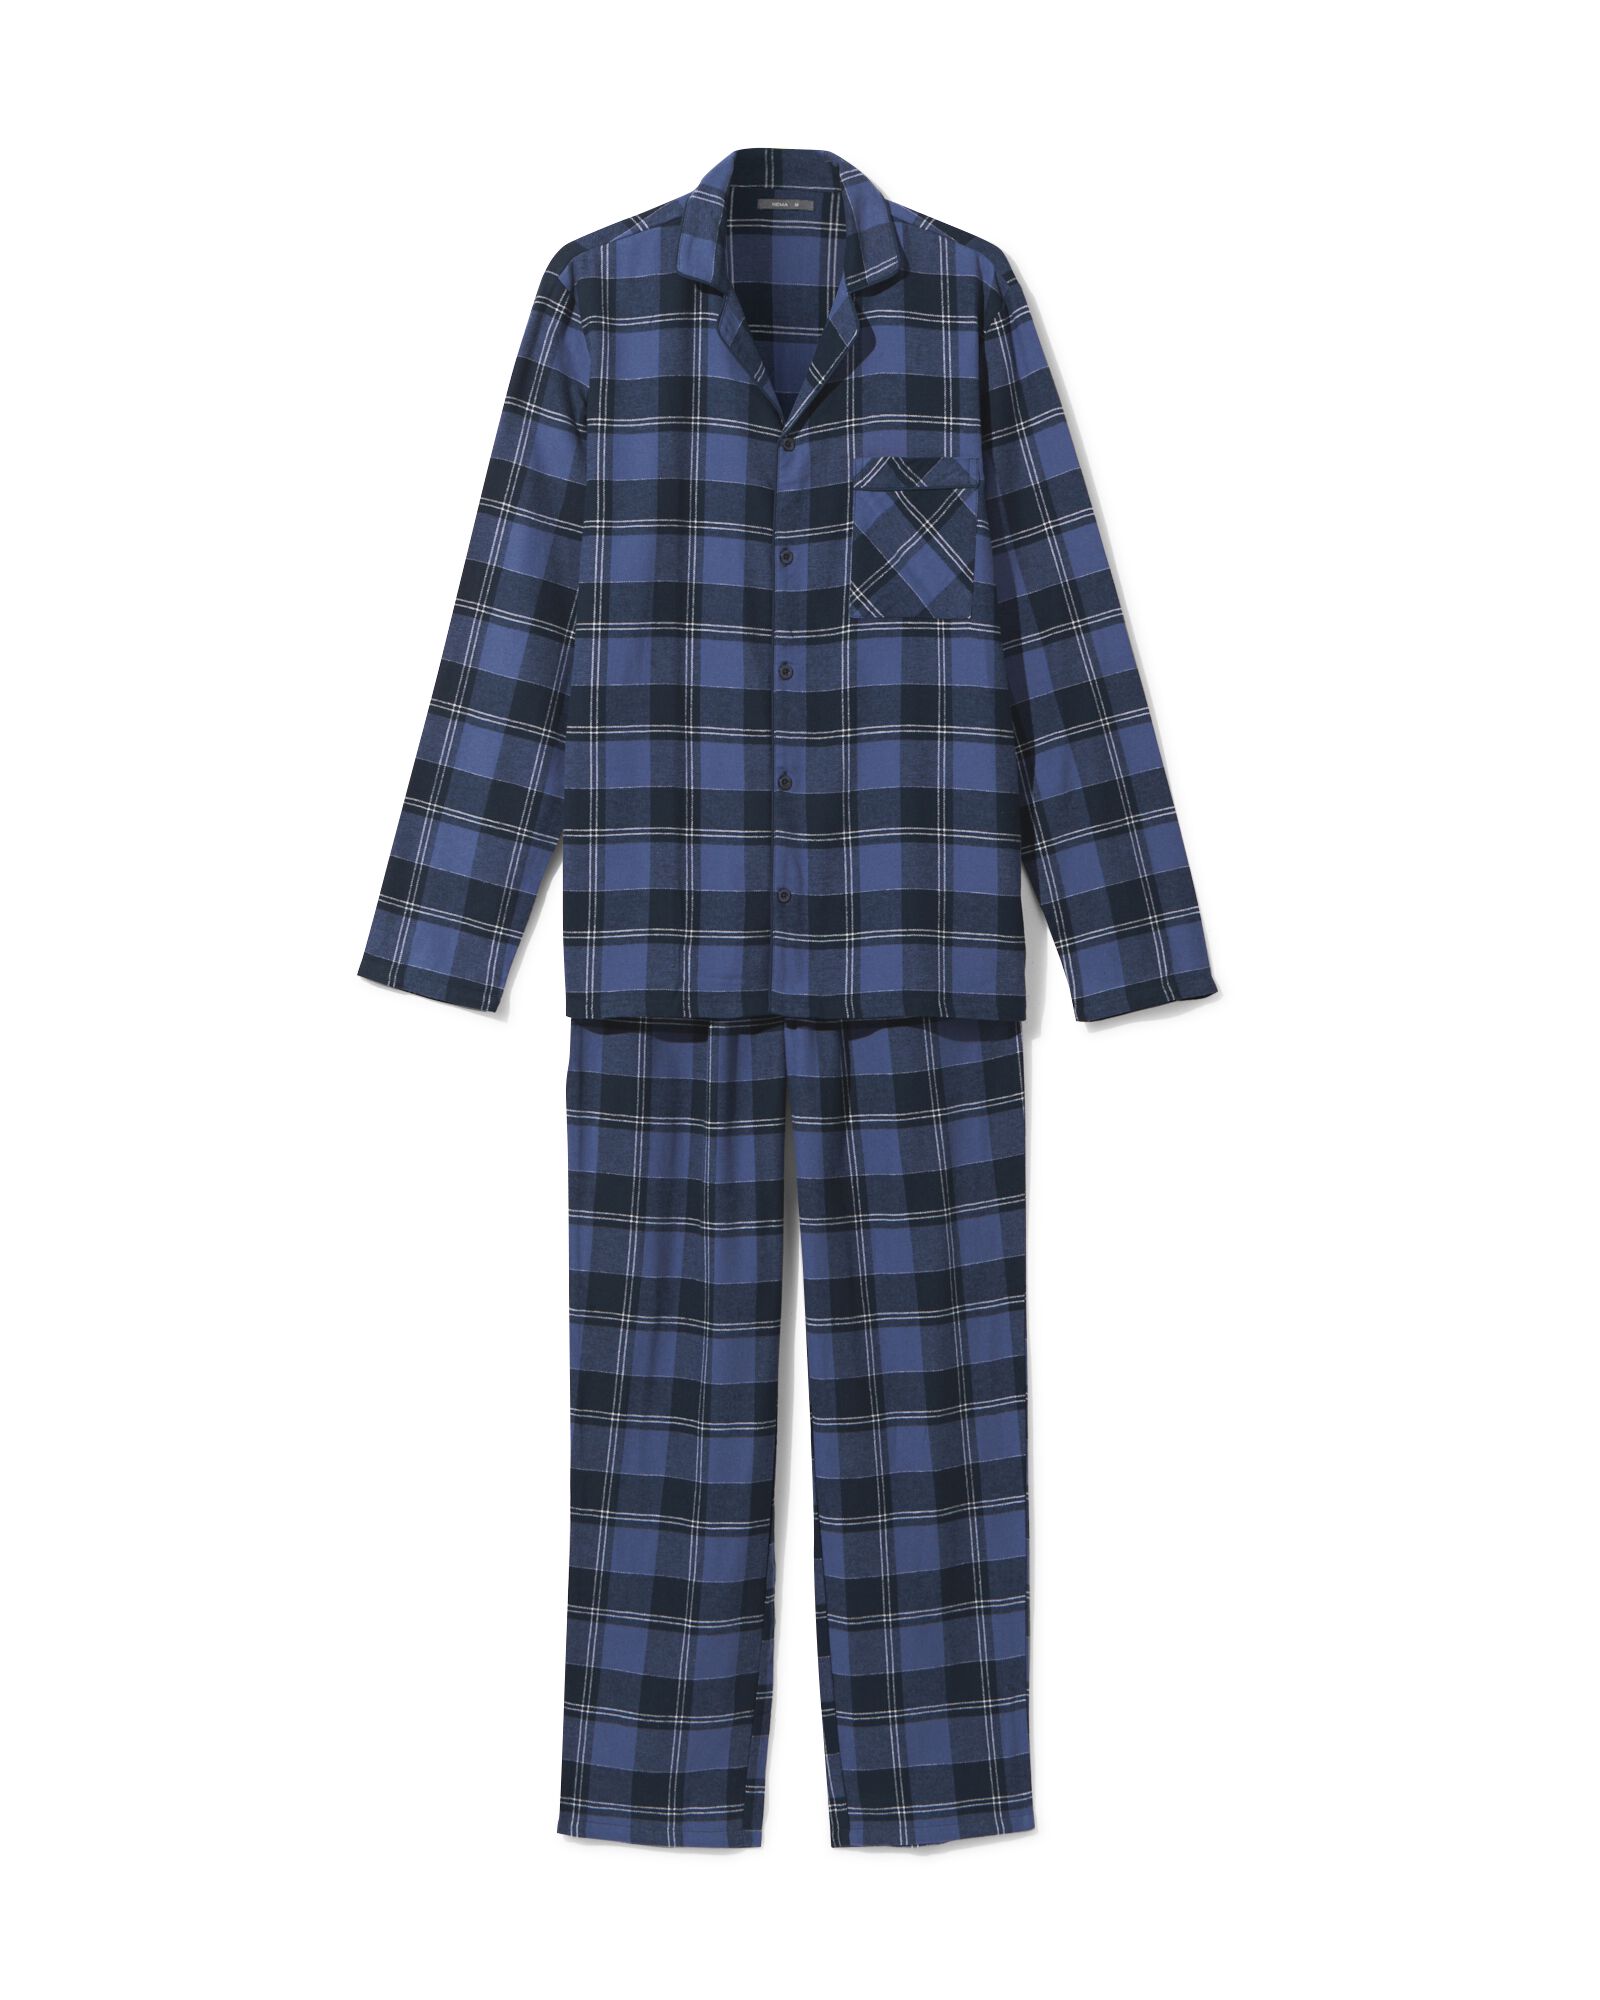 pyjama homme à carreaux flanelle bleu foncé bleu foncé - 23630240DARKBLUE - HEMA